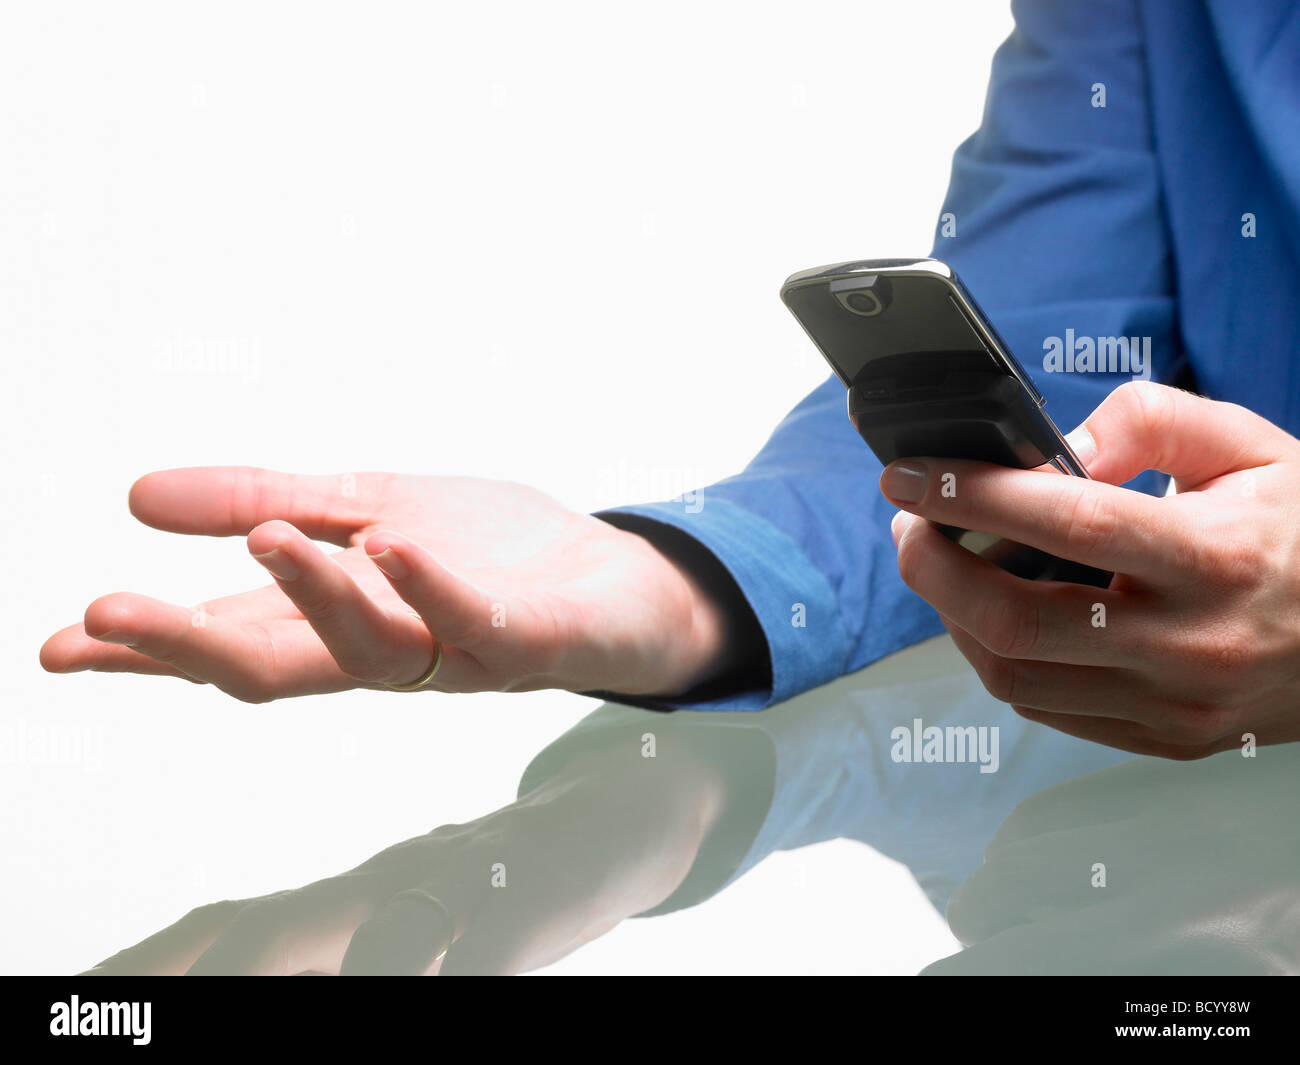 Mains d'une femme, tenant un téléphone cellulaire Banque D'Images